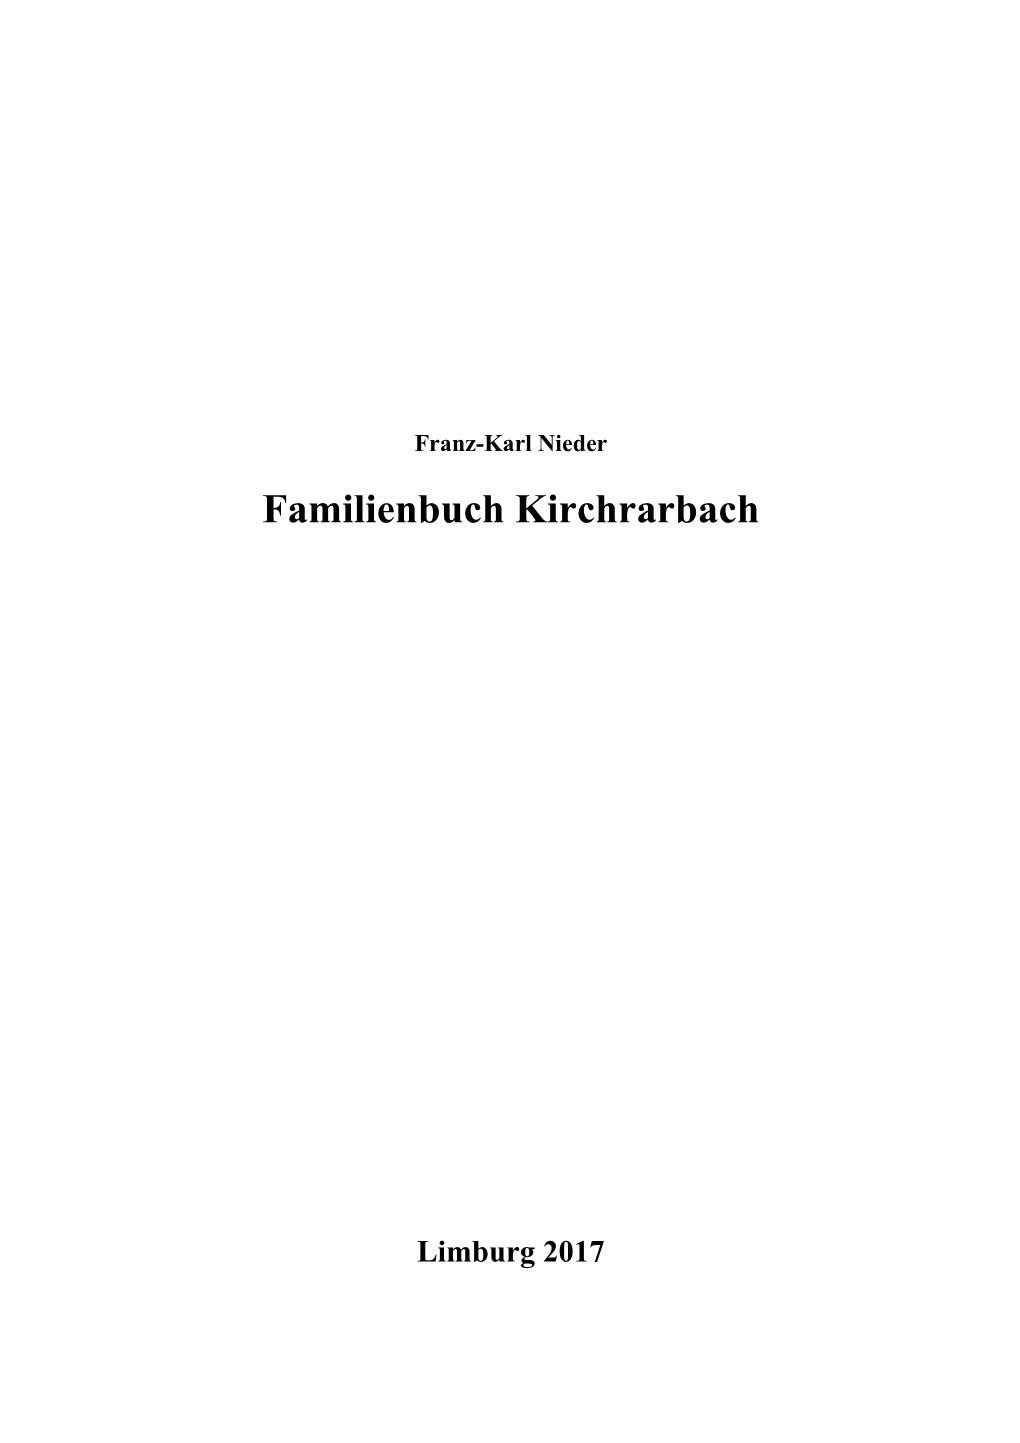 Familienbuch Kirchrarbach